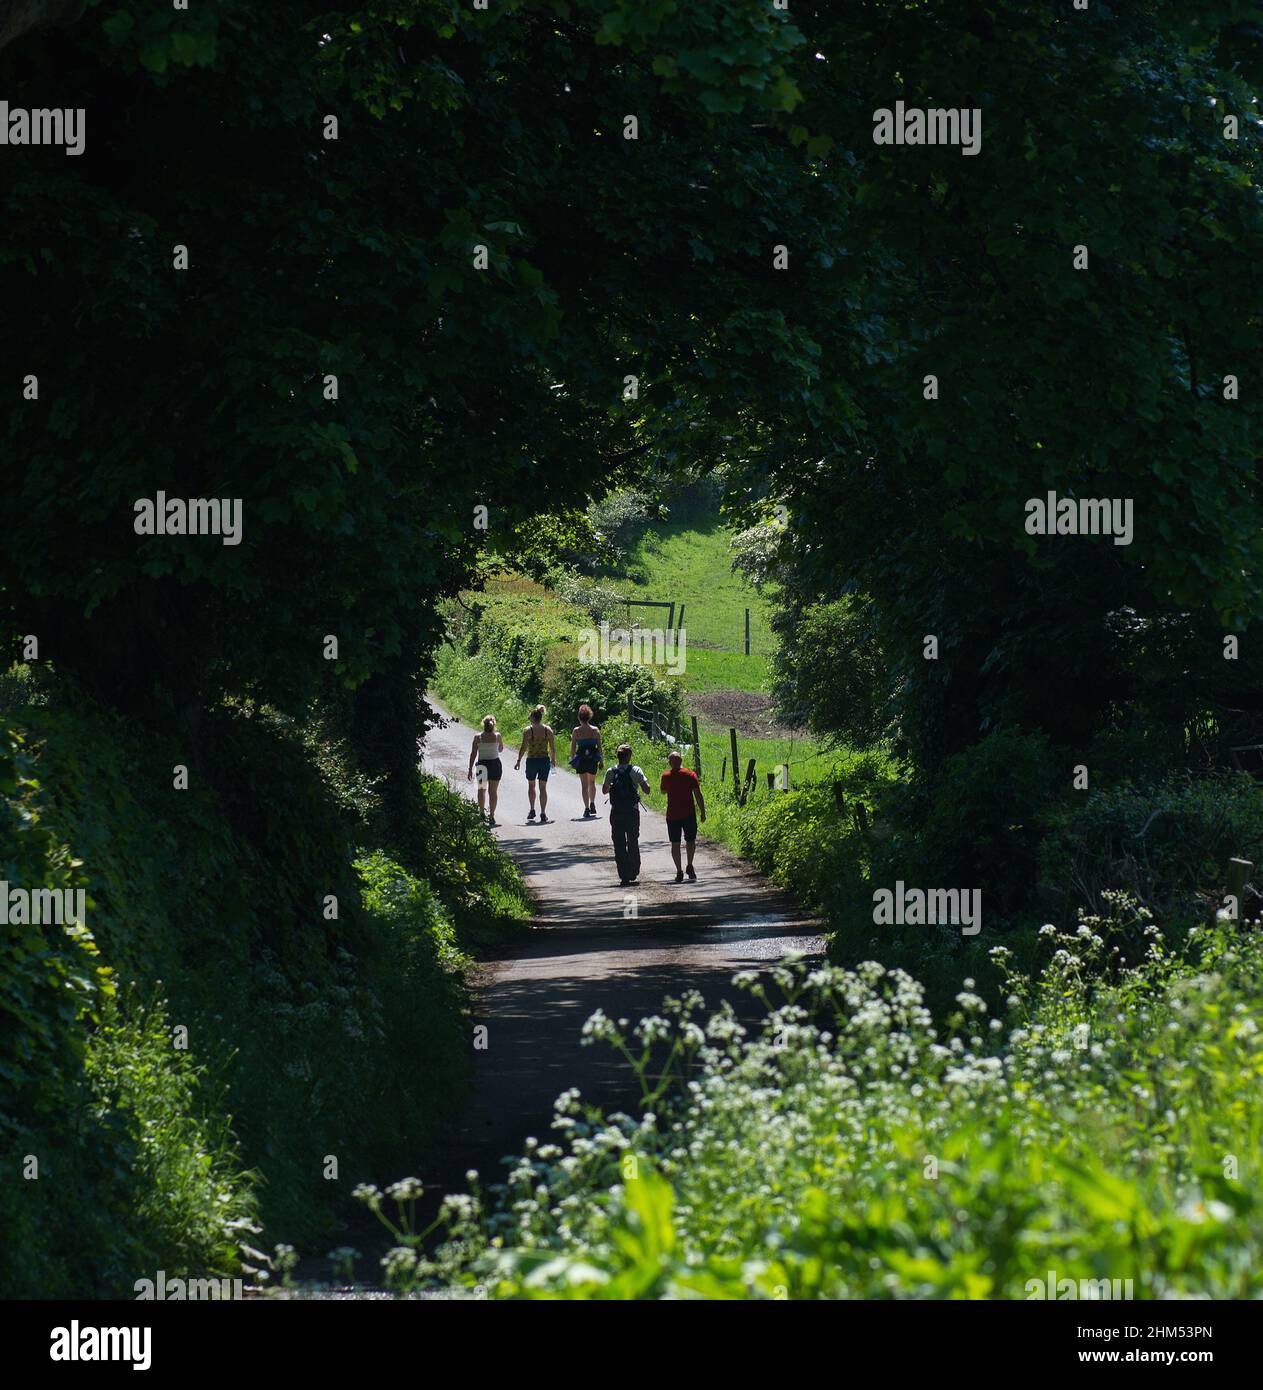 Immagine di colore quadrato di cinque persone in una passeggiata estiva lungo un sentiero di campagna e passando attraverso un arco causato da alberi sovrastanti Foto Stock